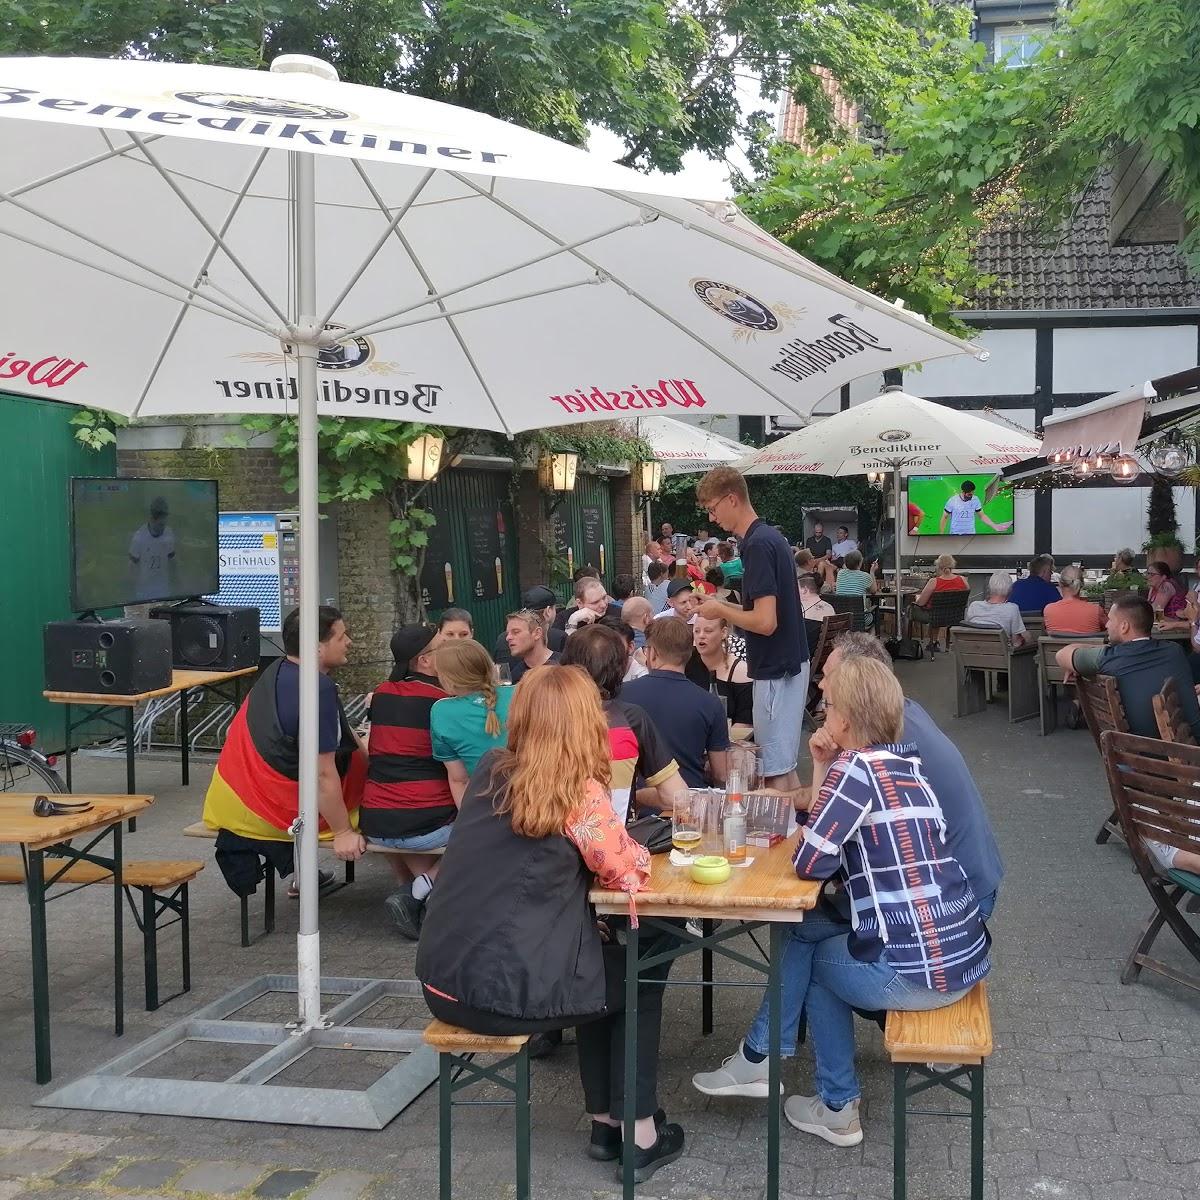 Restaurant "Zur Sonne" in Warendorf